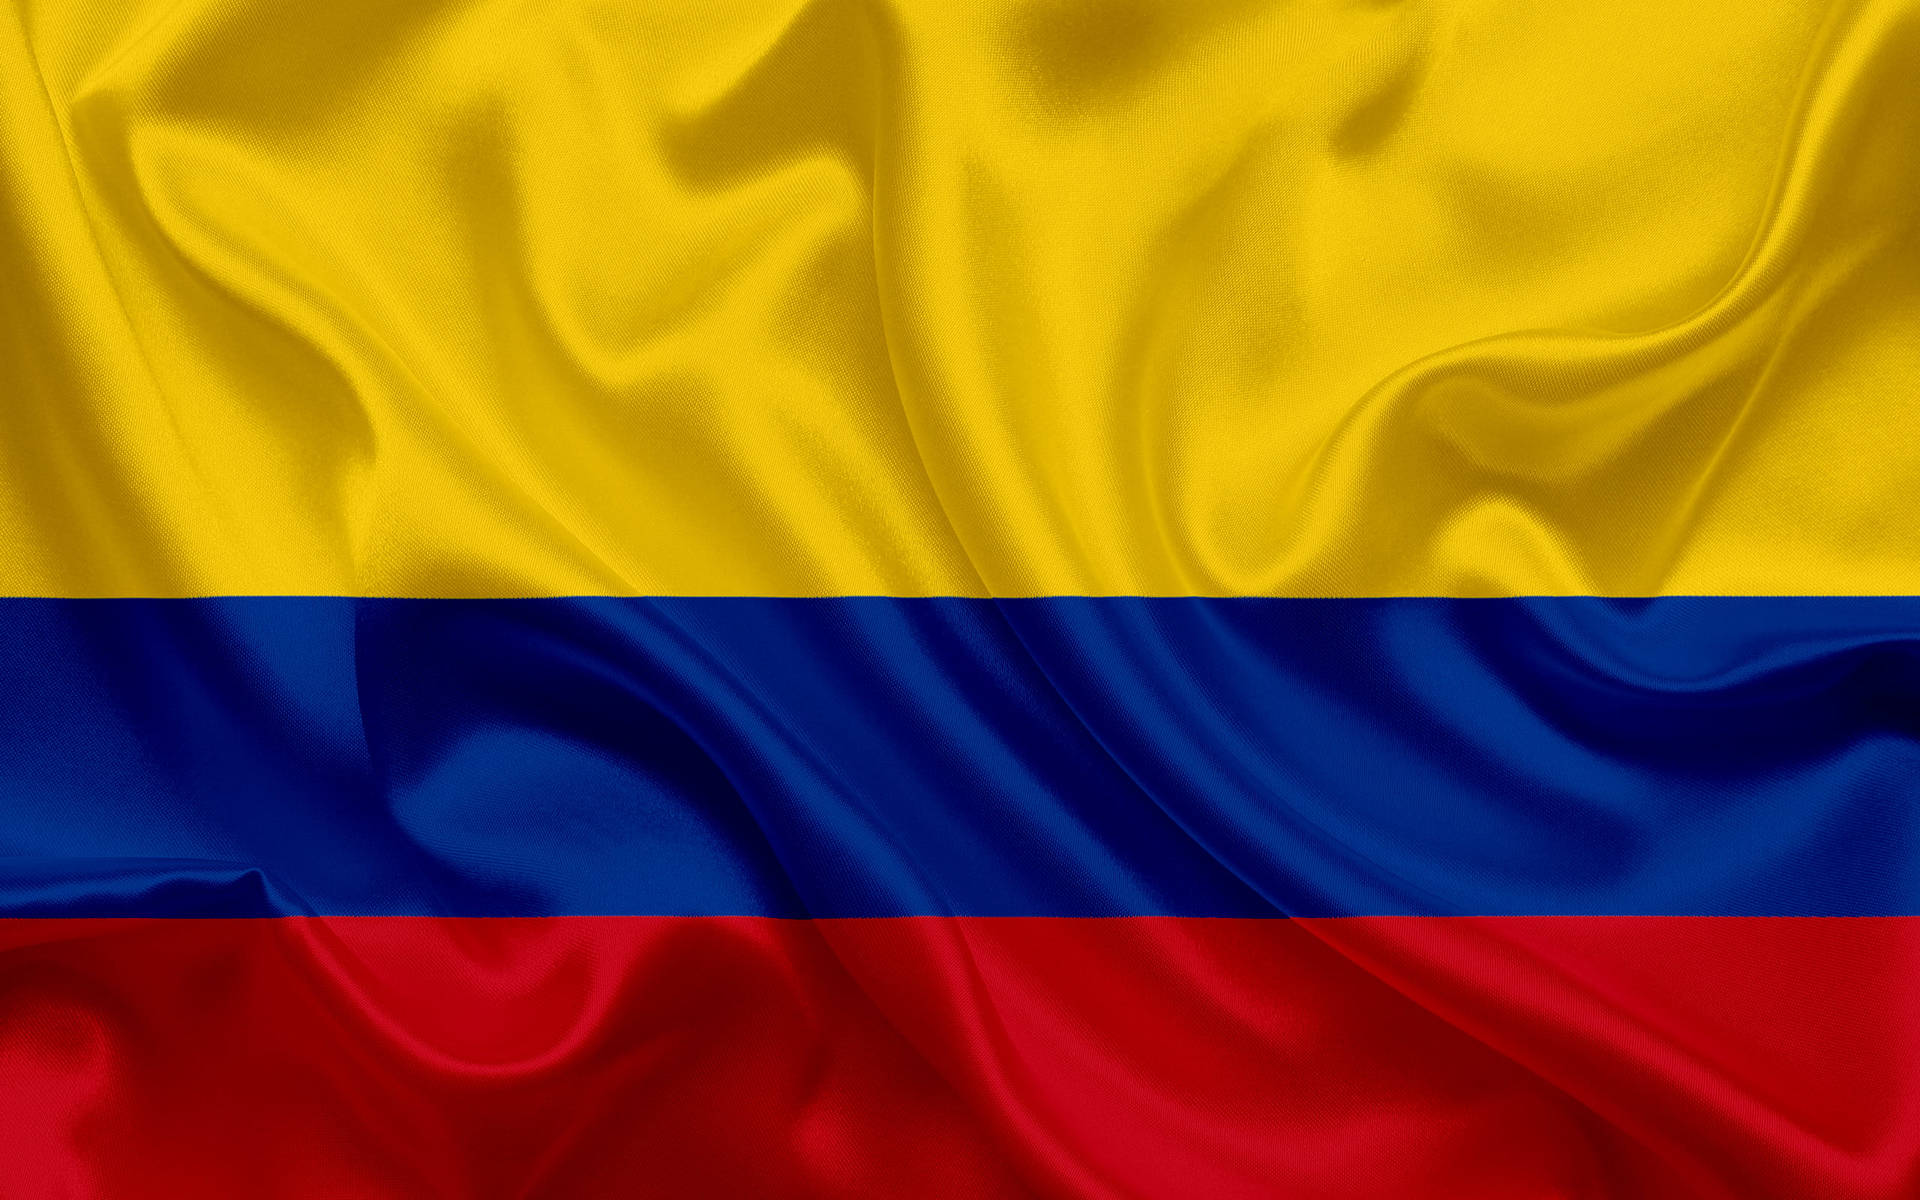 Papelde Parede Com A Elegante Bandeira Da Colômbia. Papel de Parede